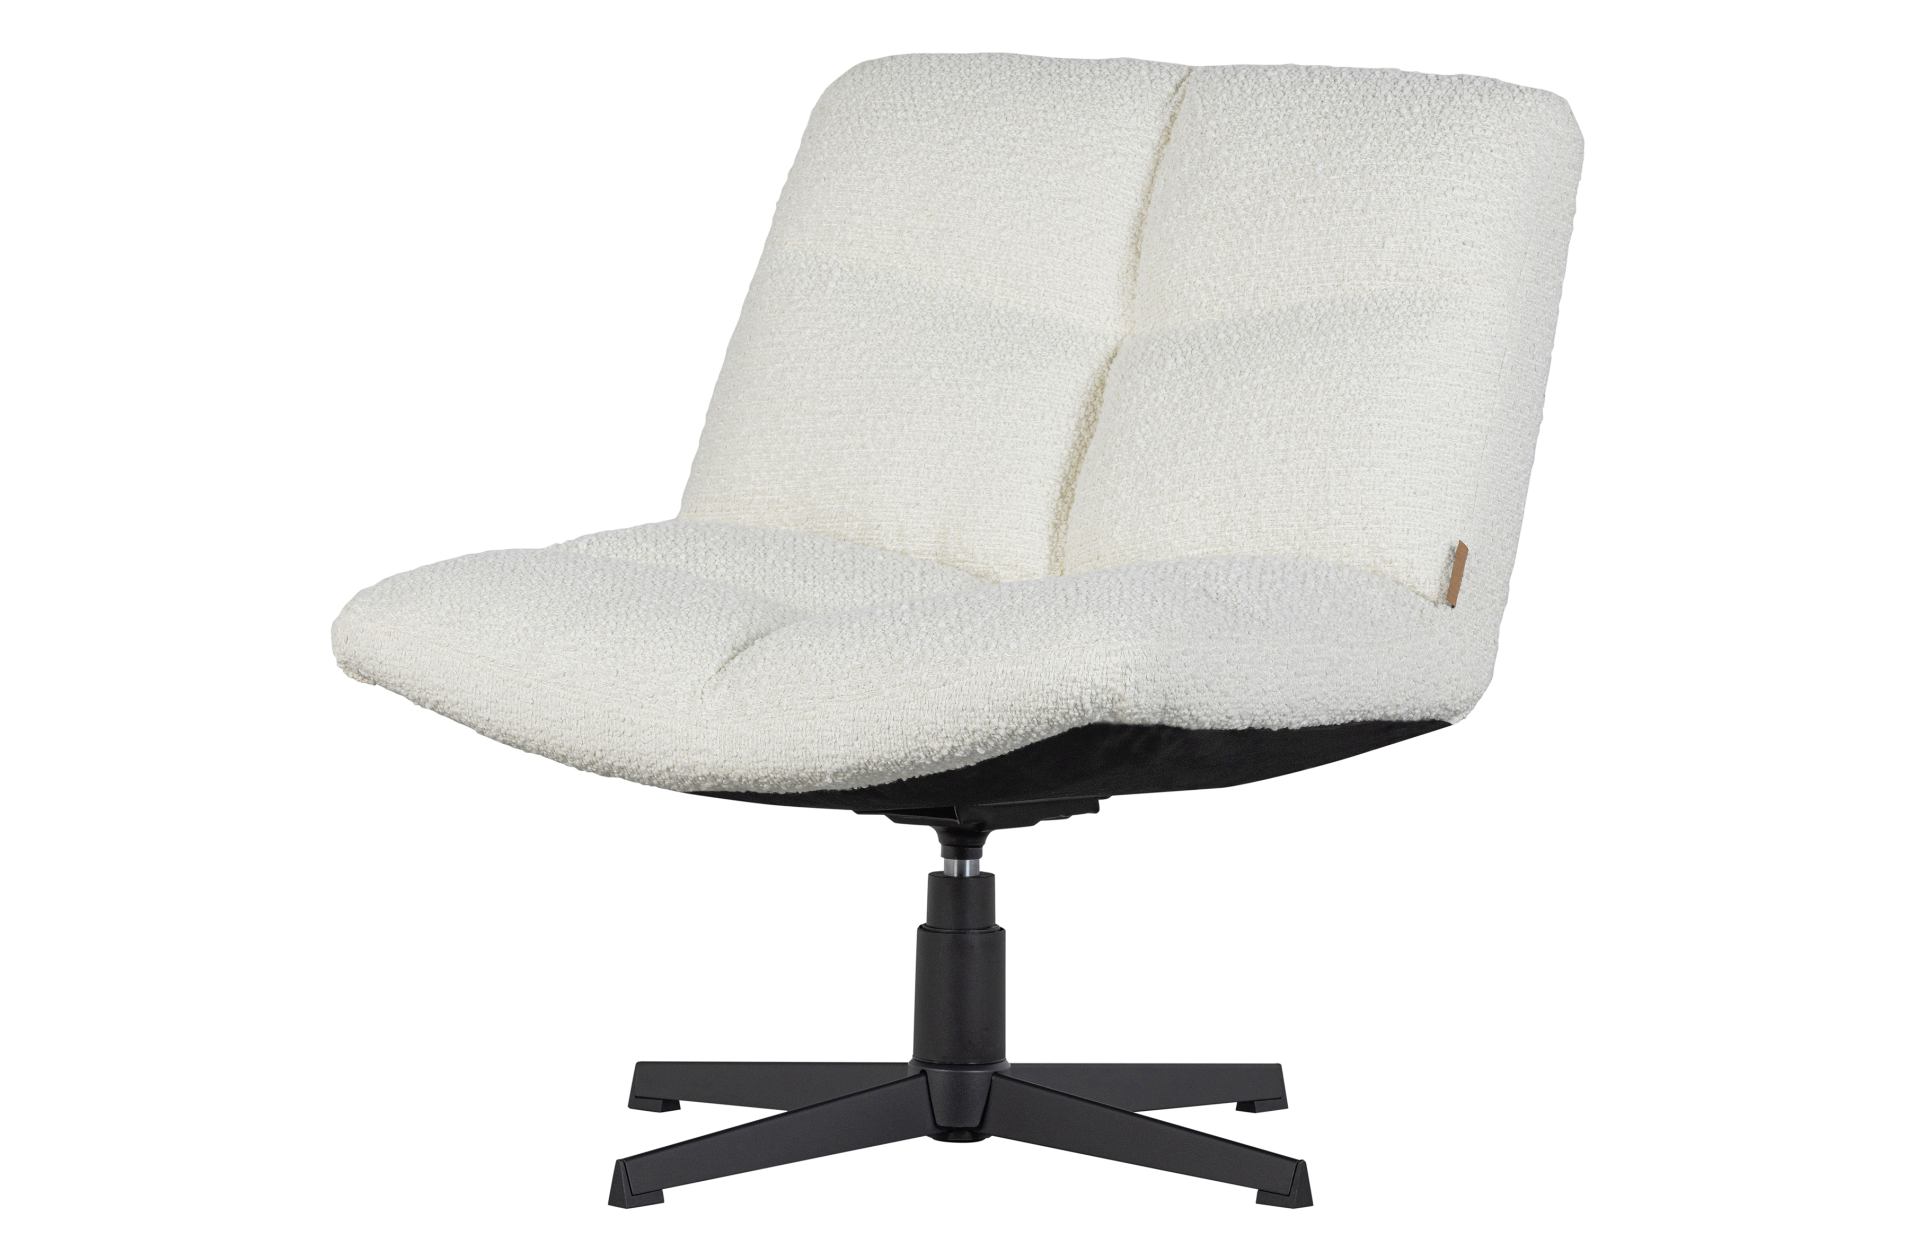 Der Drehsessel Vinny überzeugt mit seinem modernen Design. Die Drehfunktion ist ein tolles Extra, dadurch steht einem entspannten Tag nichts mehr im Wege. Die Farbe des Sessels ist Weiß.